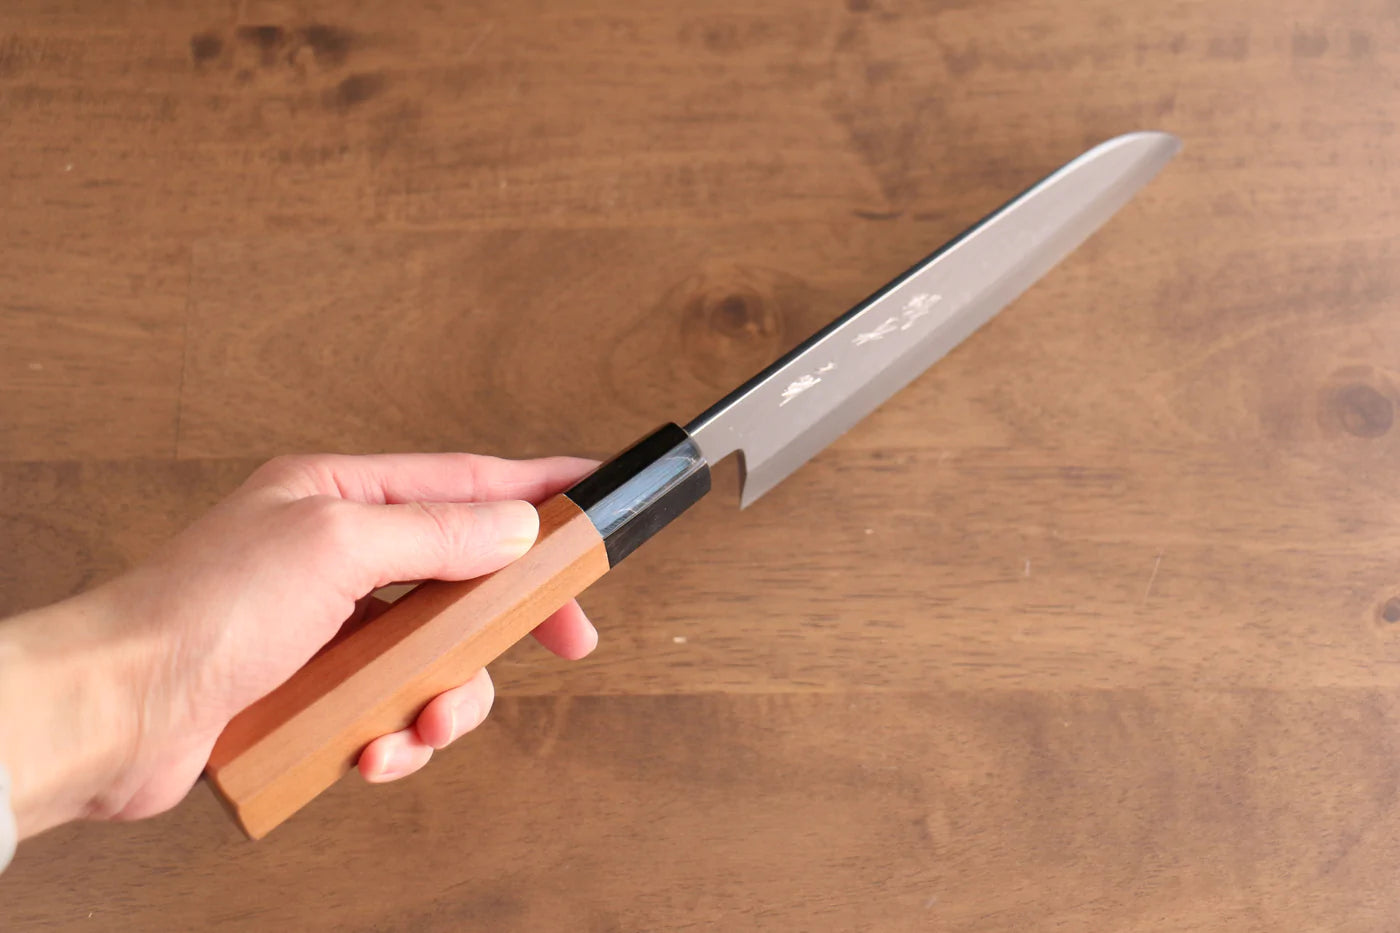 Marke Tessen von Yamatsuka Tamahagane Damaststahl Mehrzweckmesser Santoku japanisches Messer 165 mm